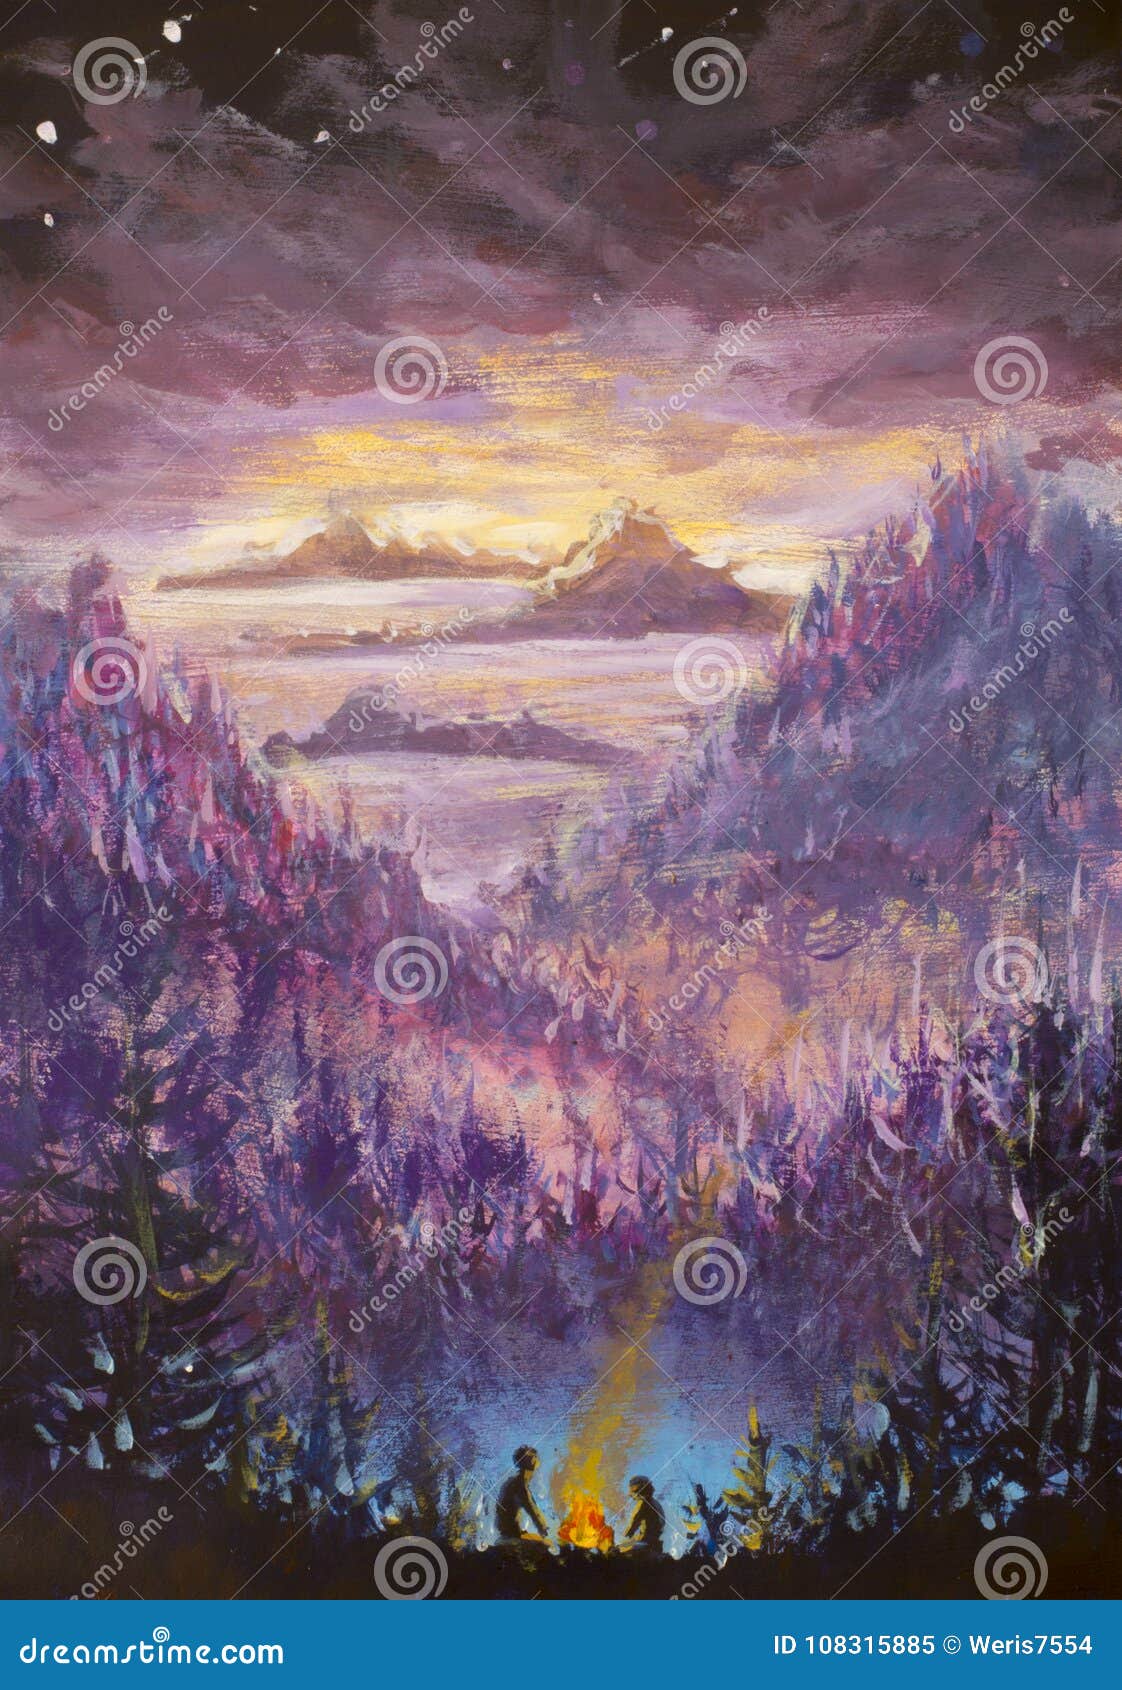 紫罗兰色山和海岛 植被 黎明 抽象风景 神秘的自然 之后启示 日落绘画watercol 库存例证 插画包括有烧伤 天空